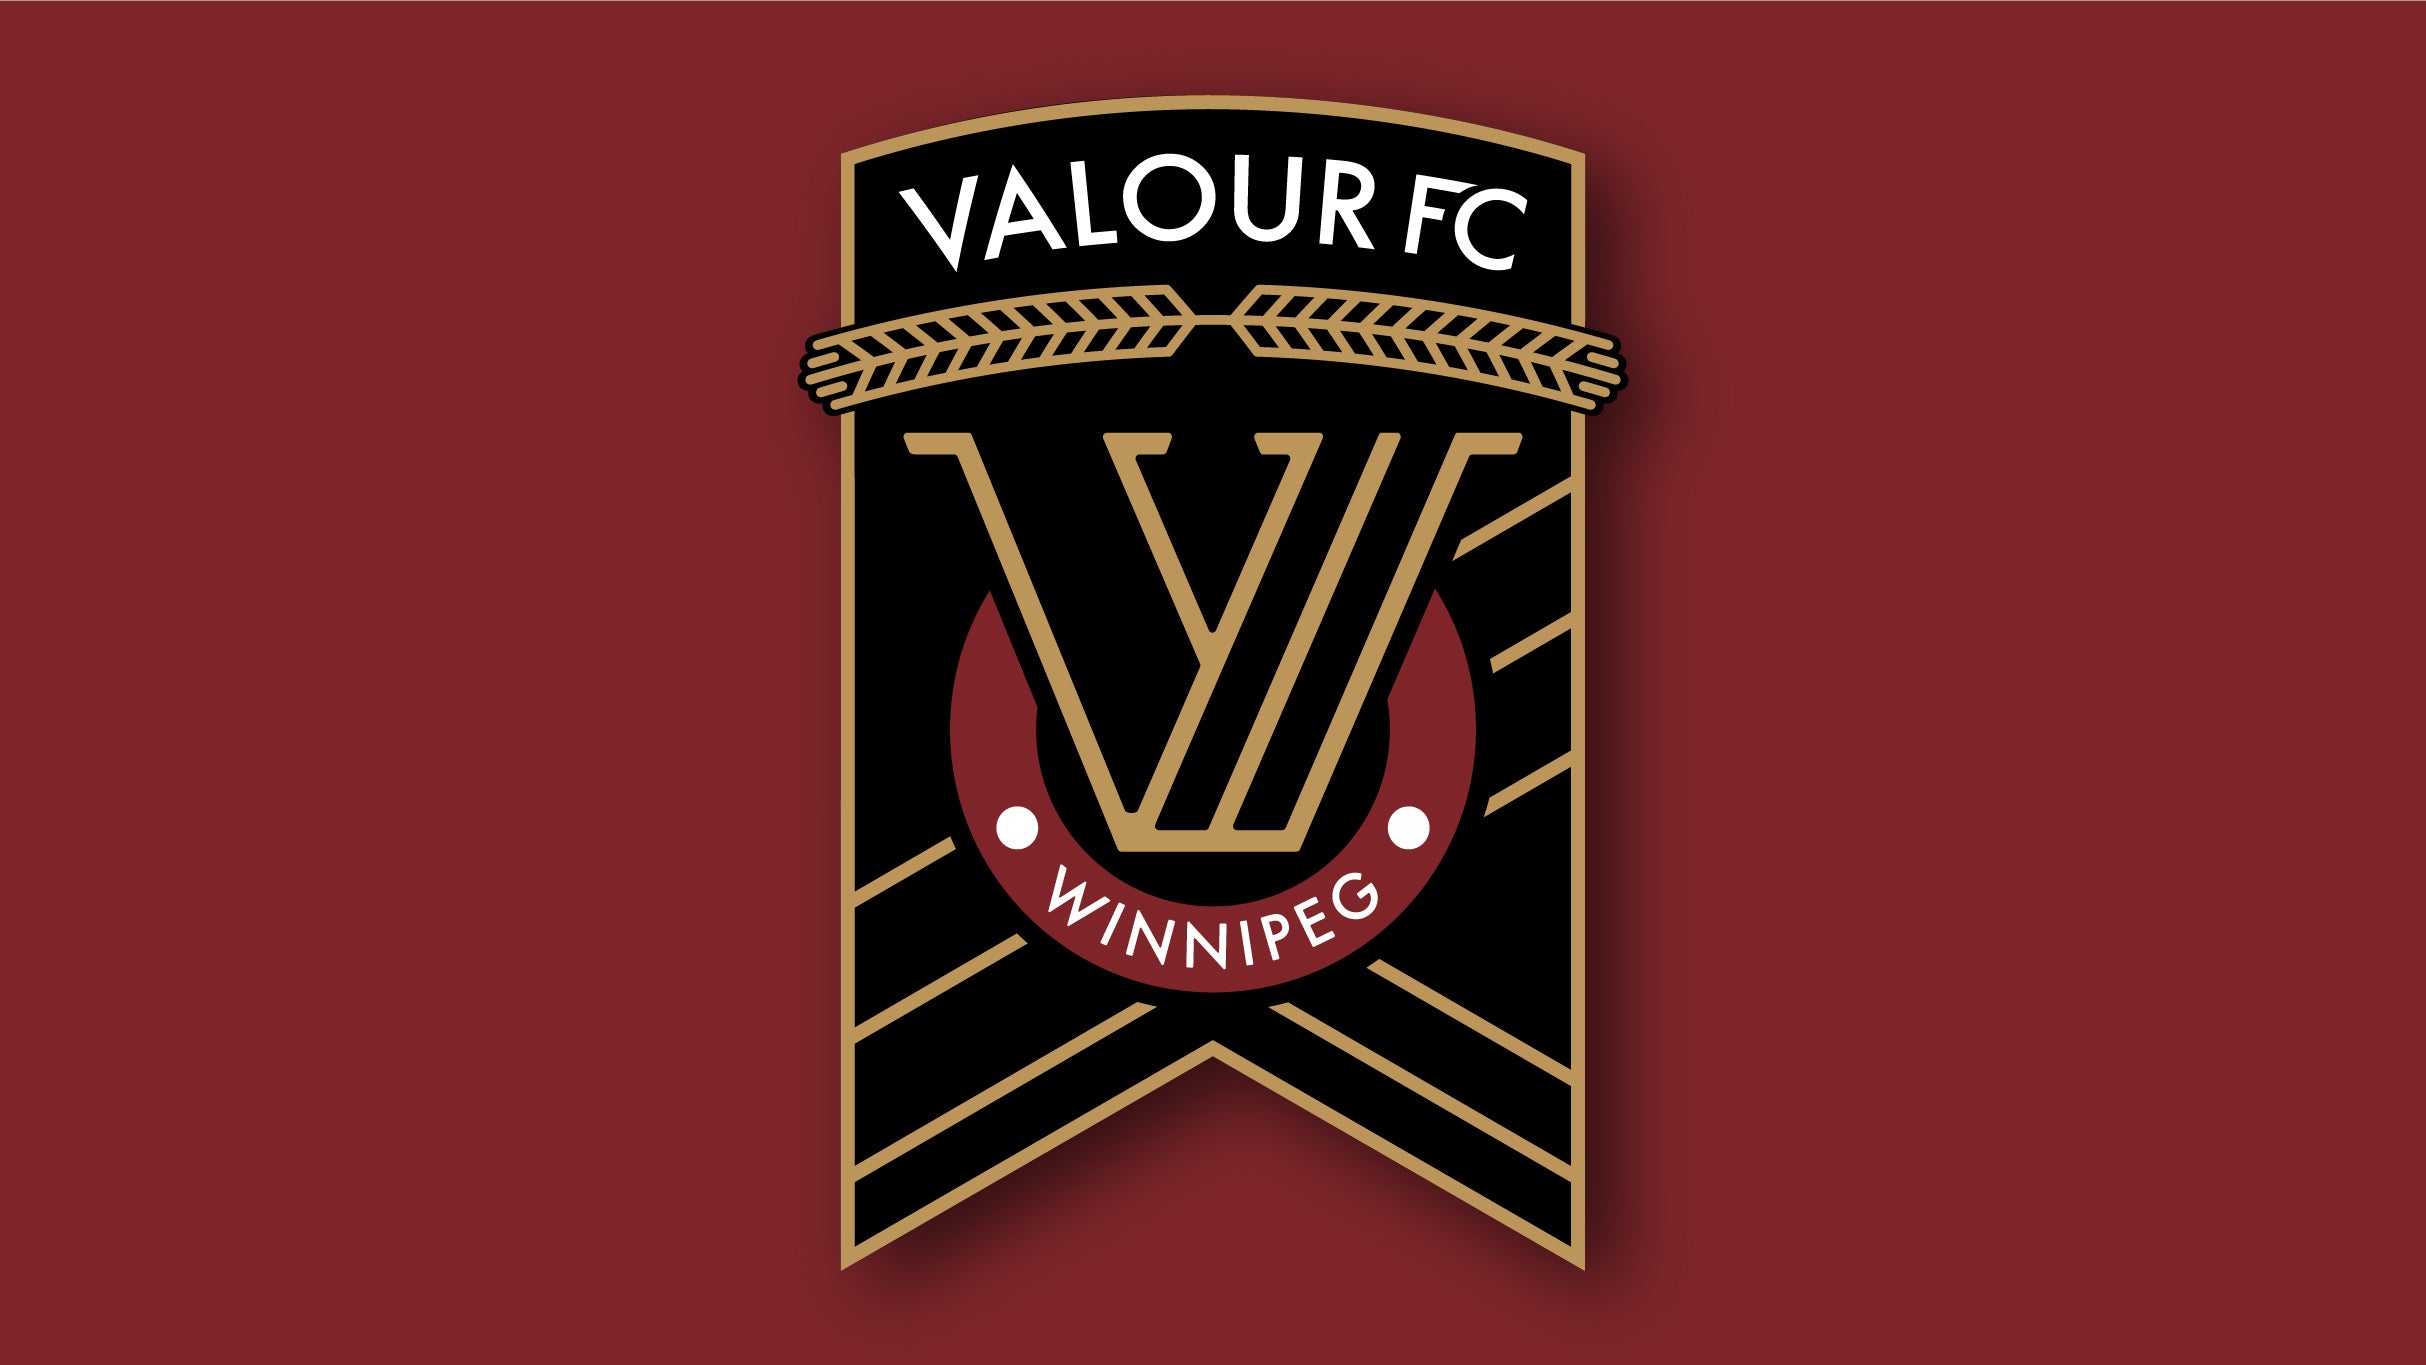 Valour FC vs. Vancouver FC presales in Winnipeg